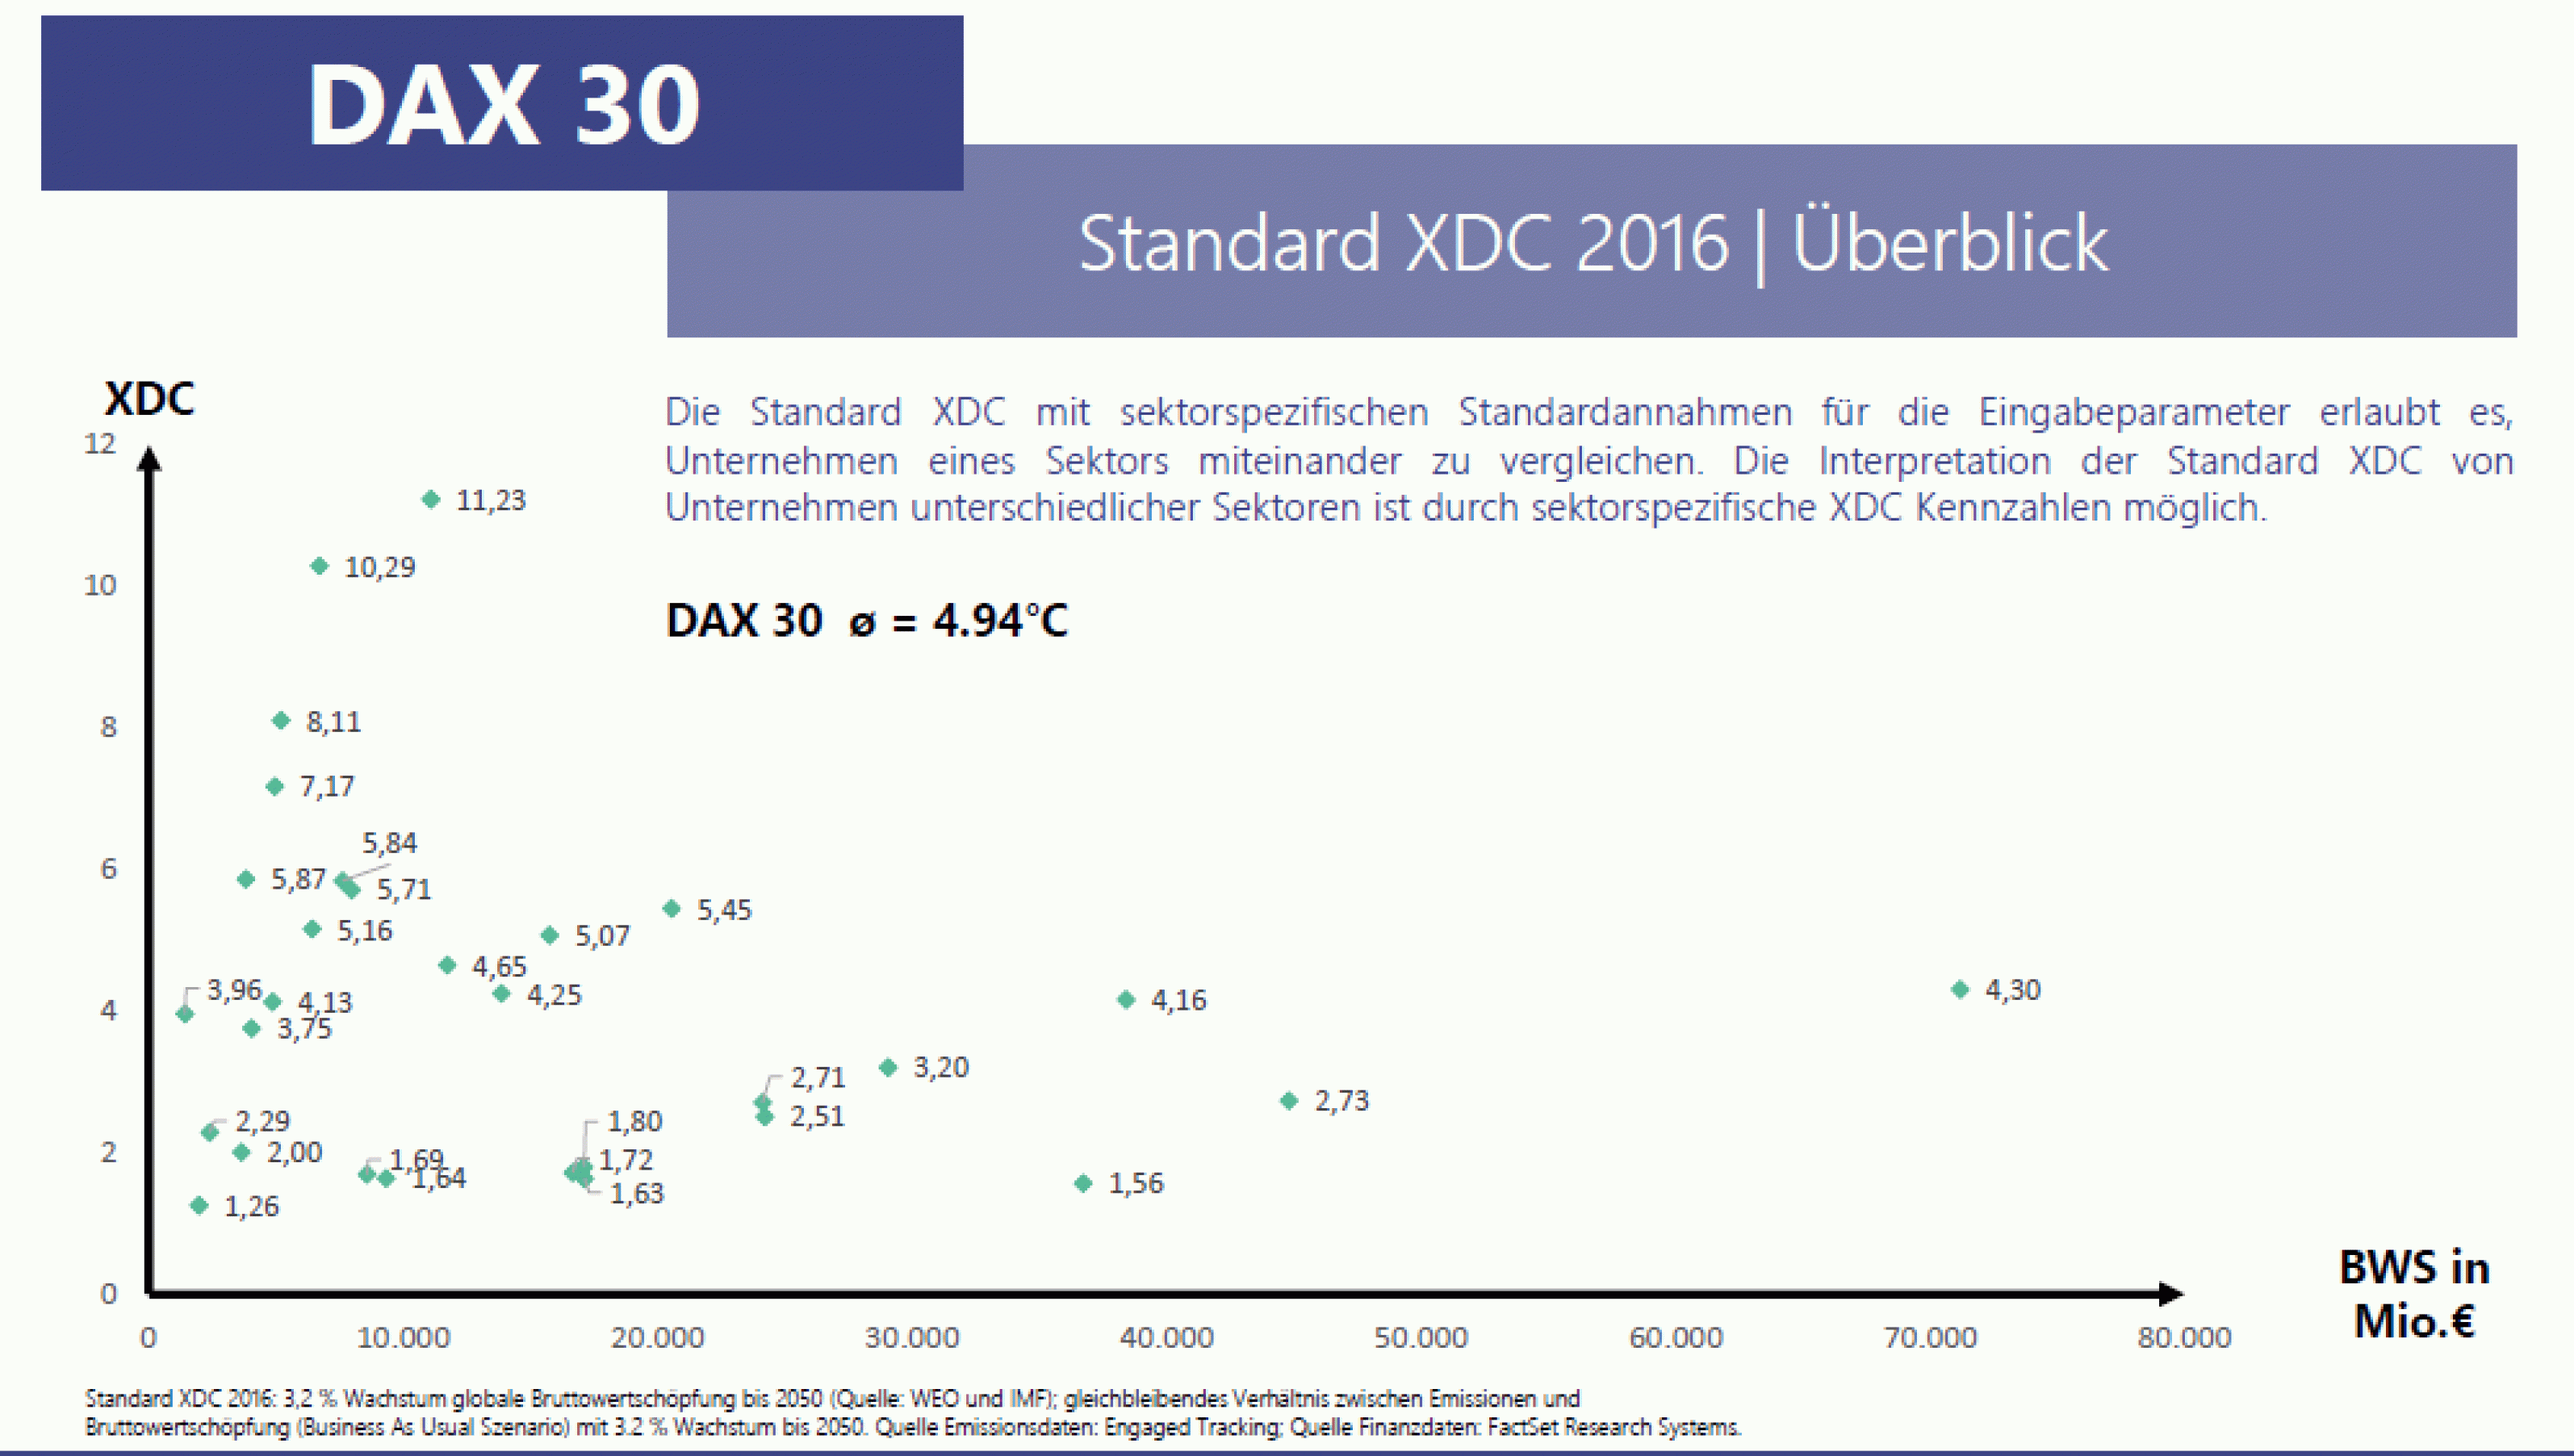 Die Auswertung von DAX-30-Unternehmen mit Hilfe der XDC-Kennzahlen zu ihren Standardannahmen zeigt eine große Streuung der Werte. (Grafik: right.)